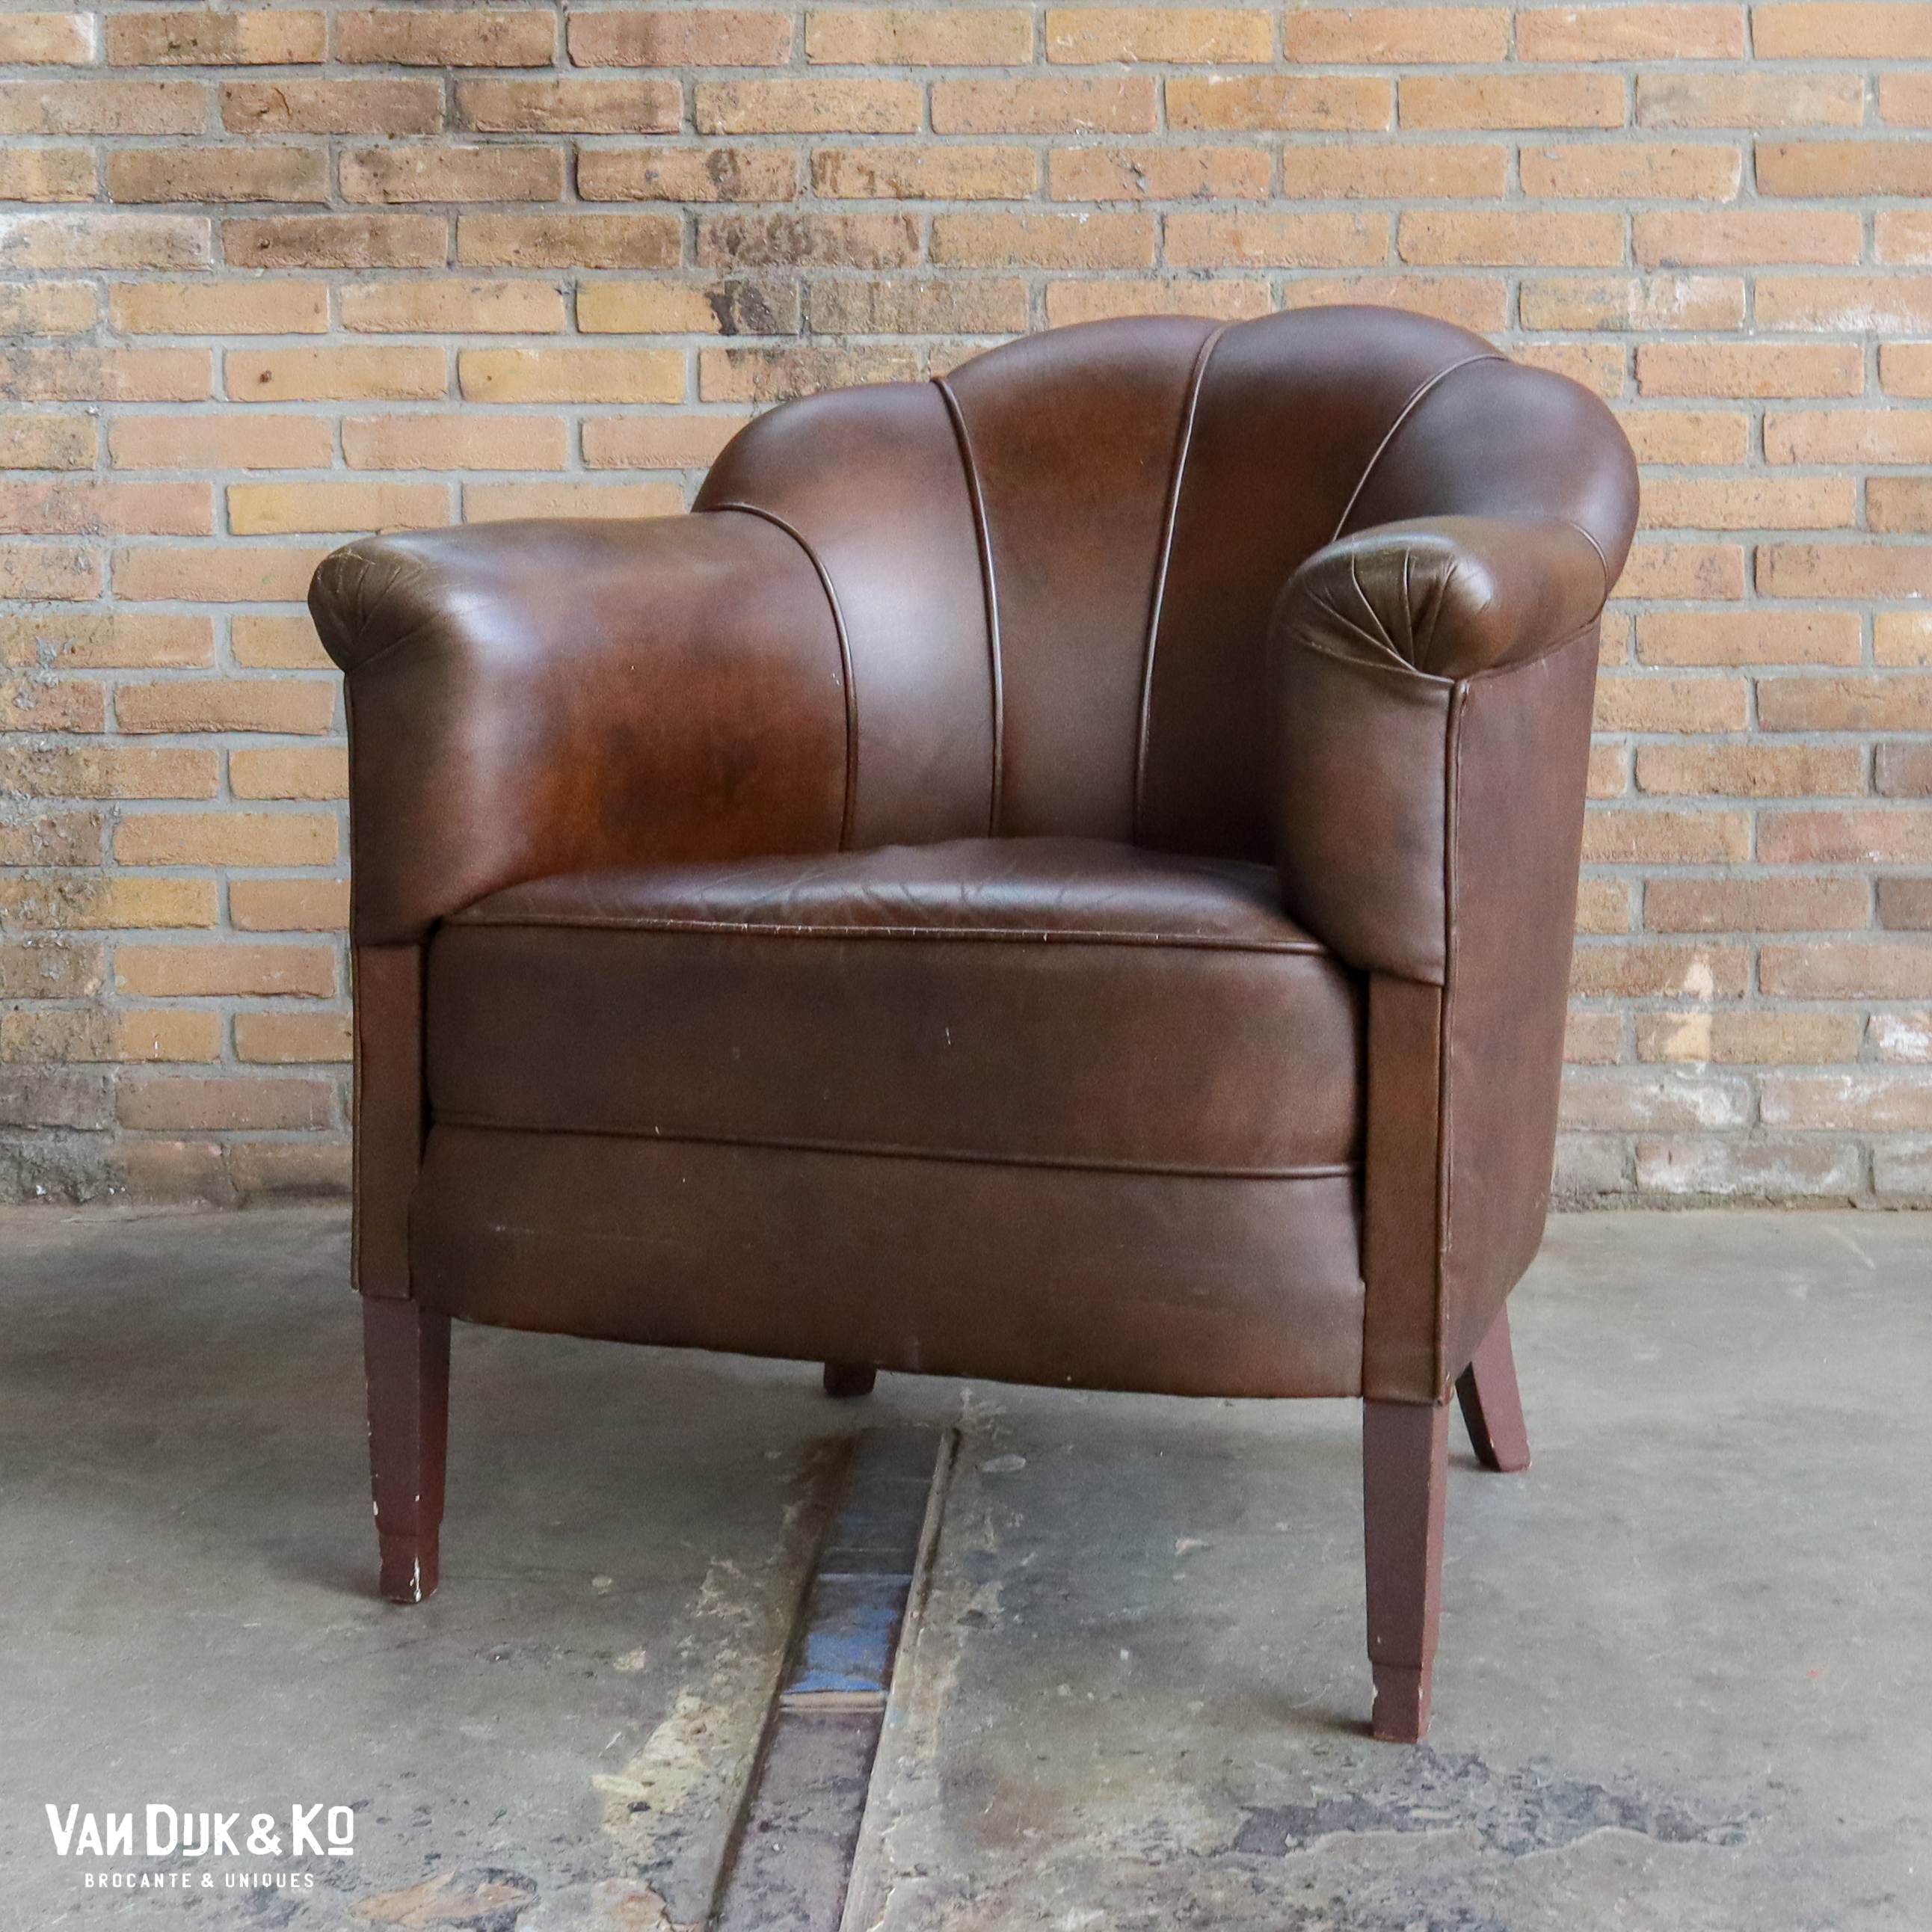 zakdoek Veranderlijk Wie Vintage leren fauteuil » Van Dijk & Ko